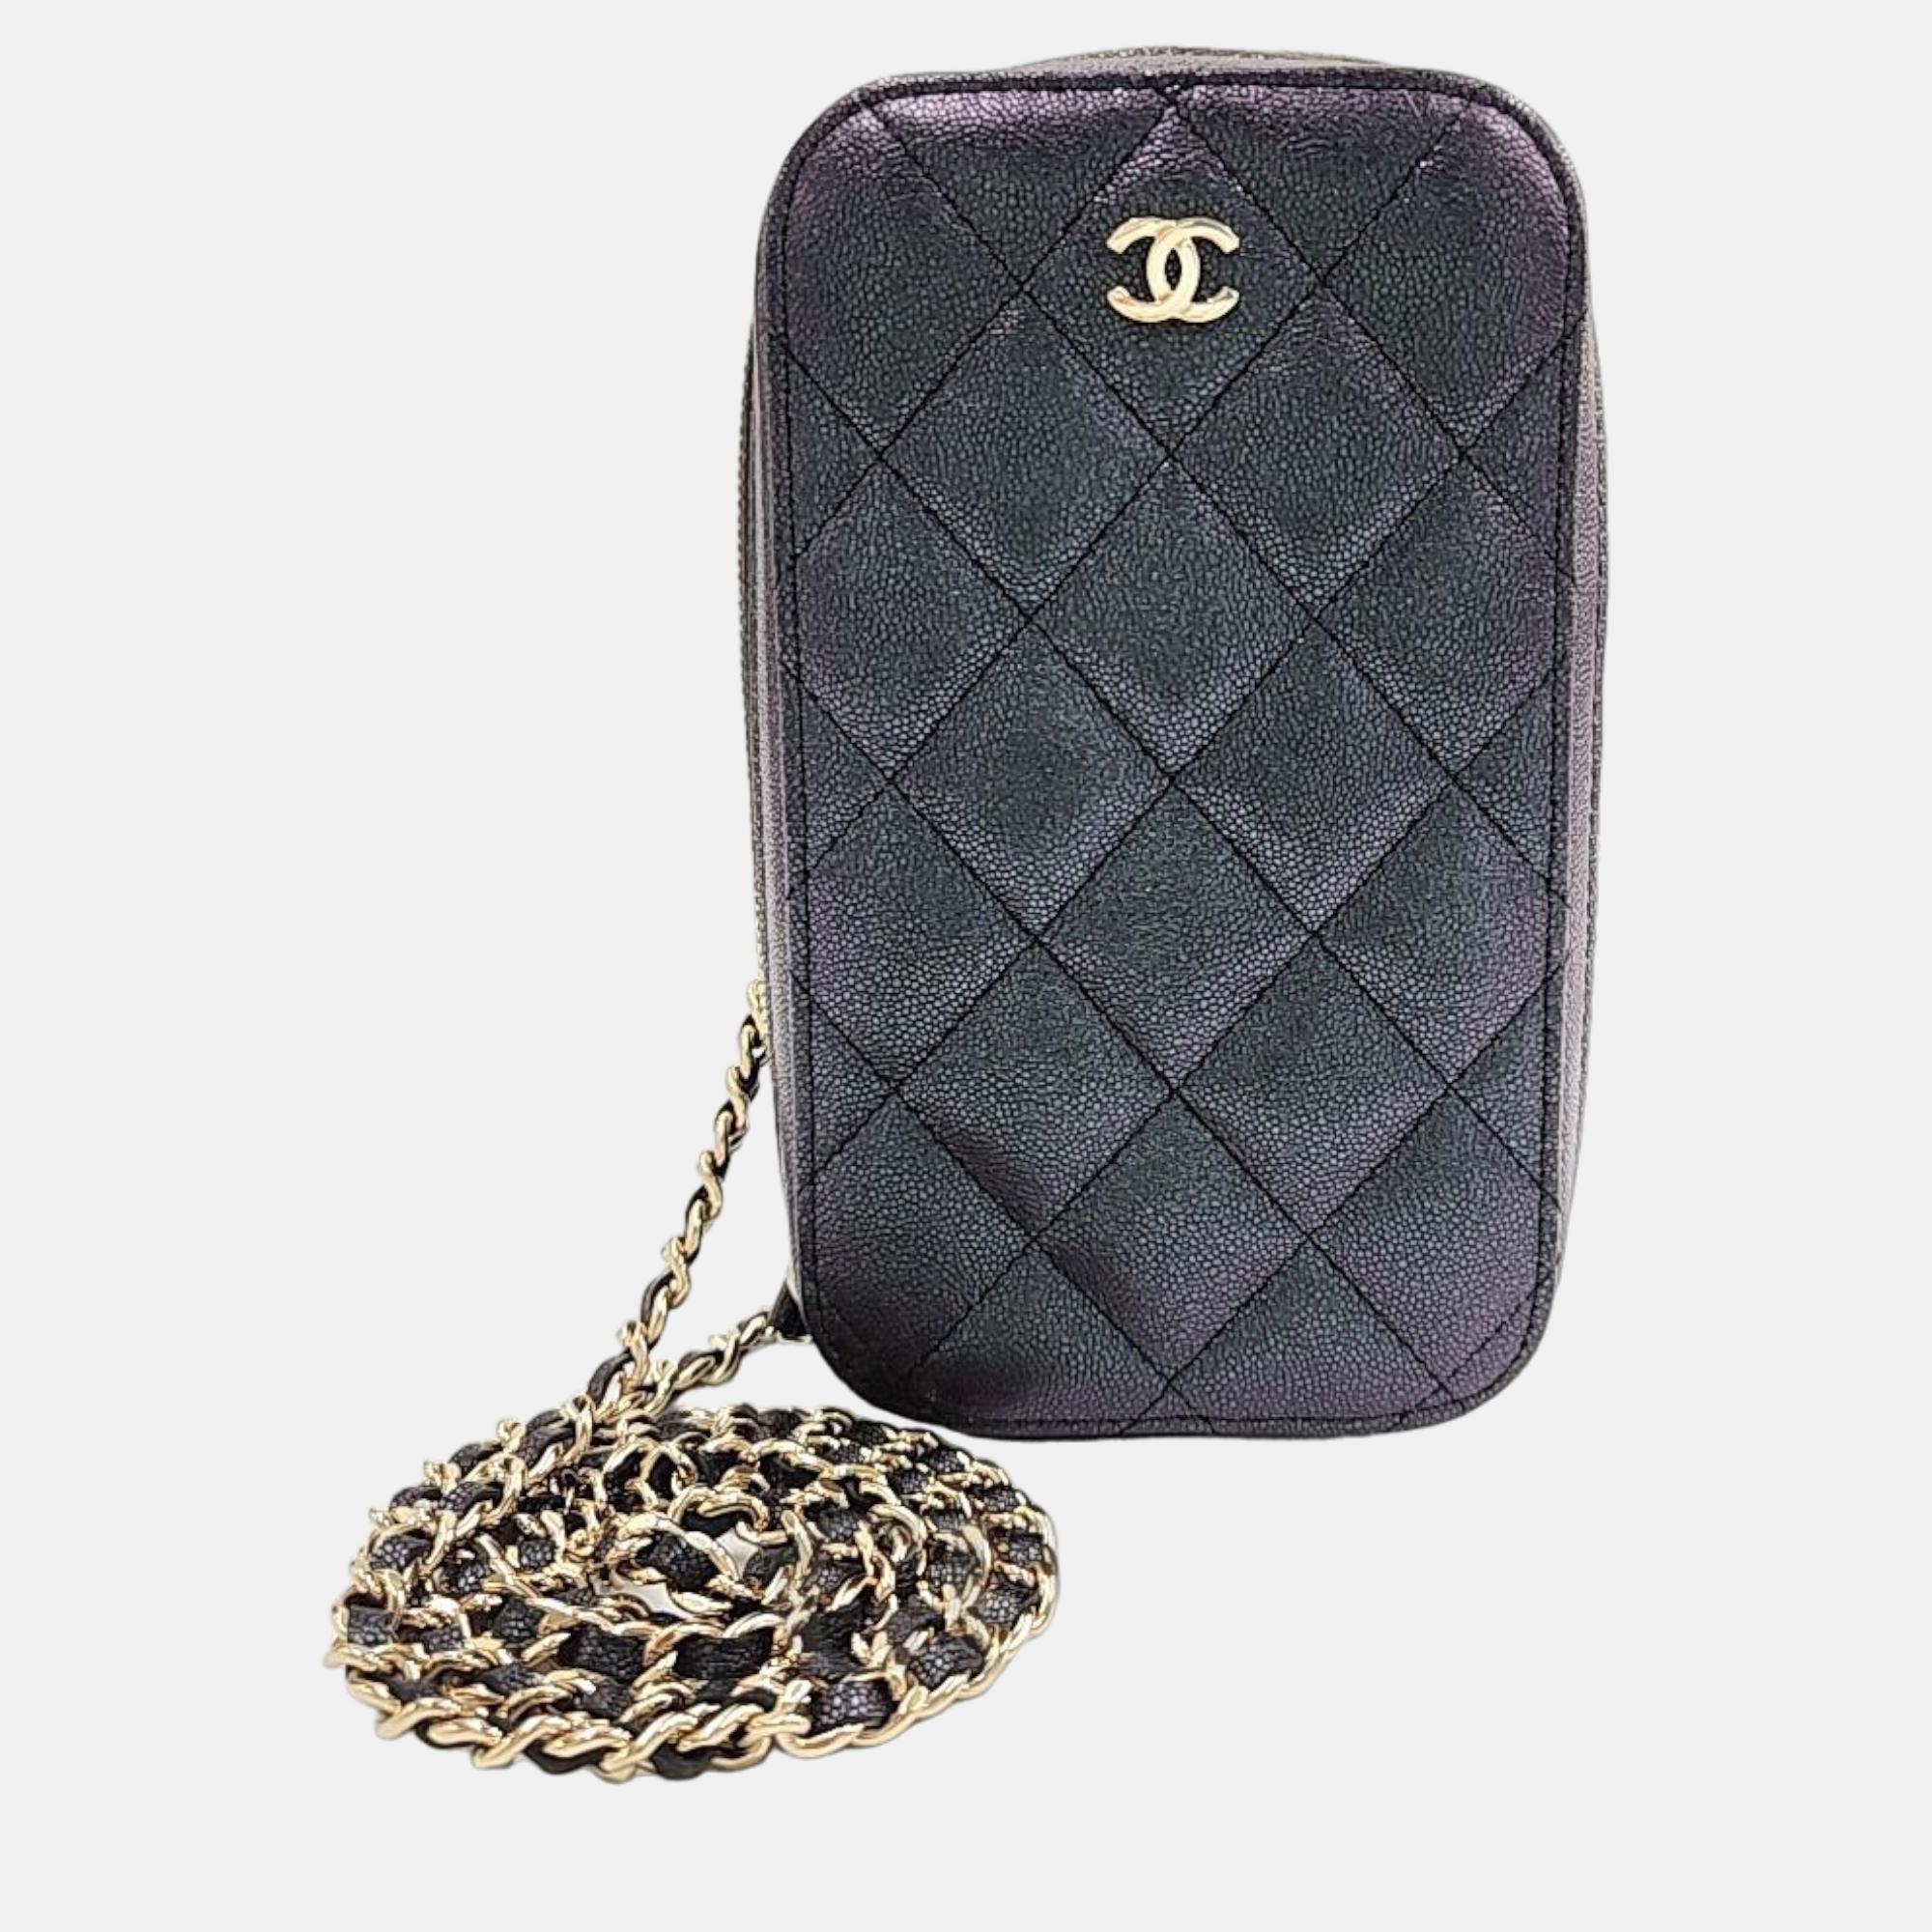 Chanel Black Leather CC Quilted Phone Holder Shoulder Bag